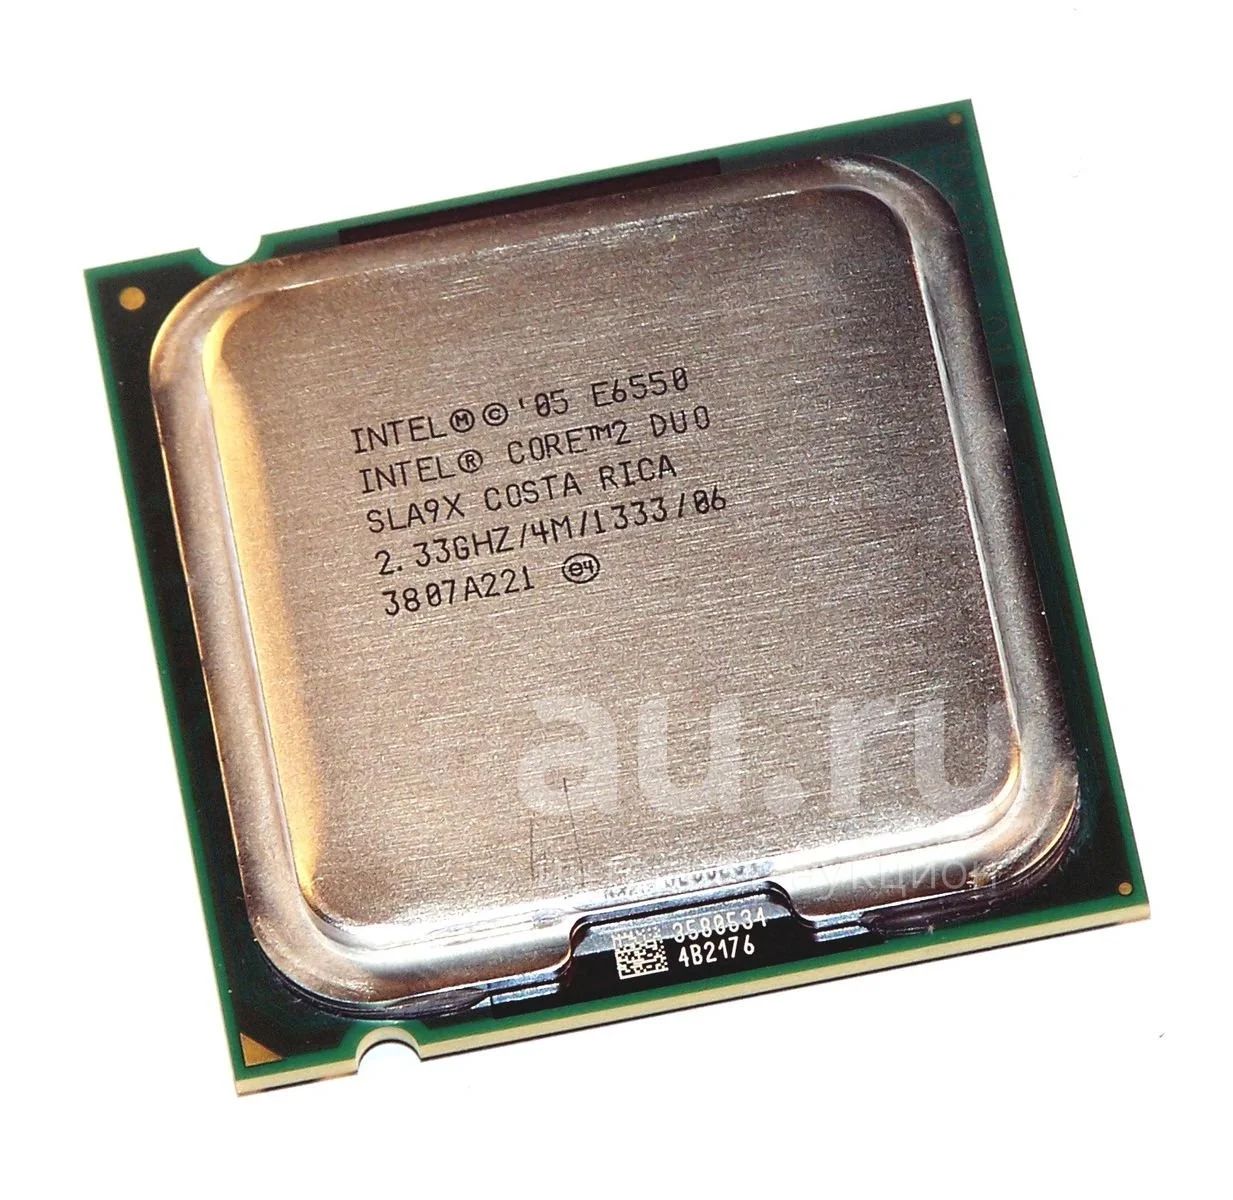 Процессор Intel Core 2 Duo e4400. Intel Core 2 Duo e6550 Conroe lga775, 2 x 2333 МГЦ. Процессор Intel® core2 Duo e7600. Процессор Intel Core 2 Duo e6550 характеристики.